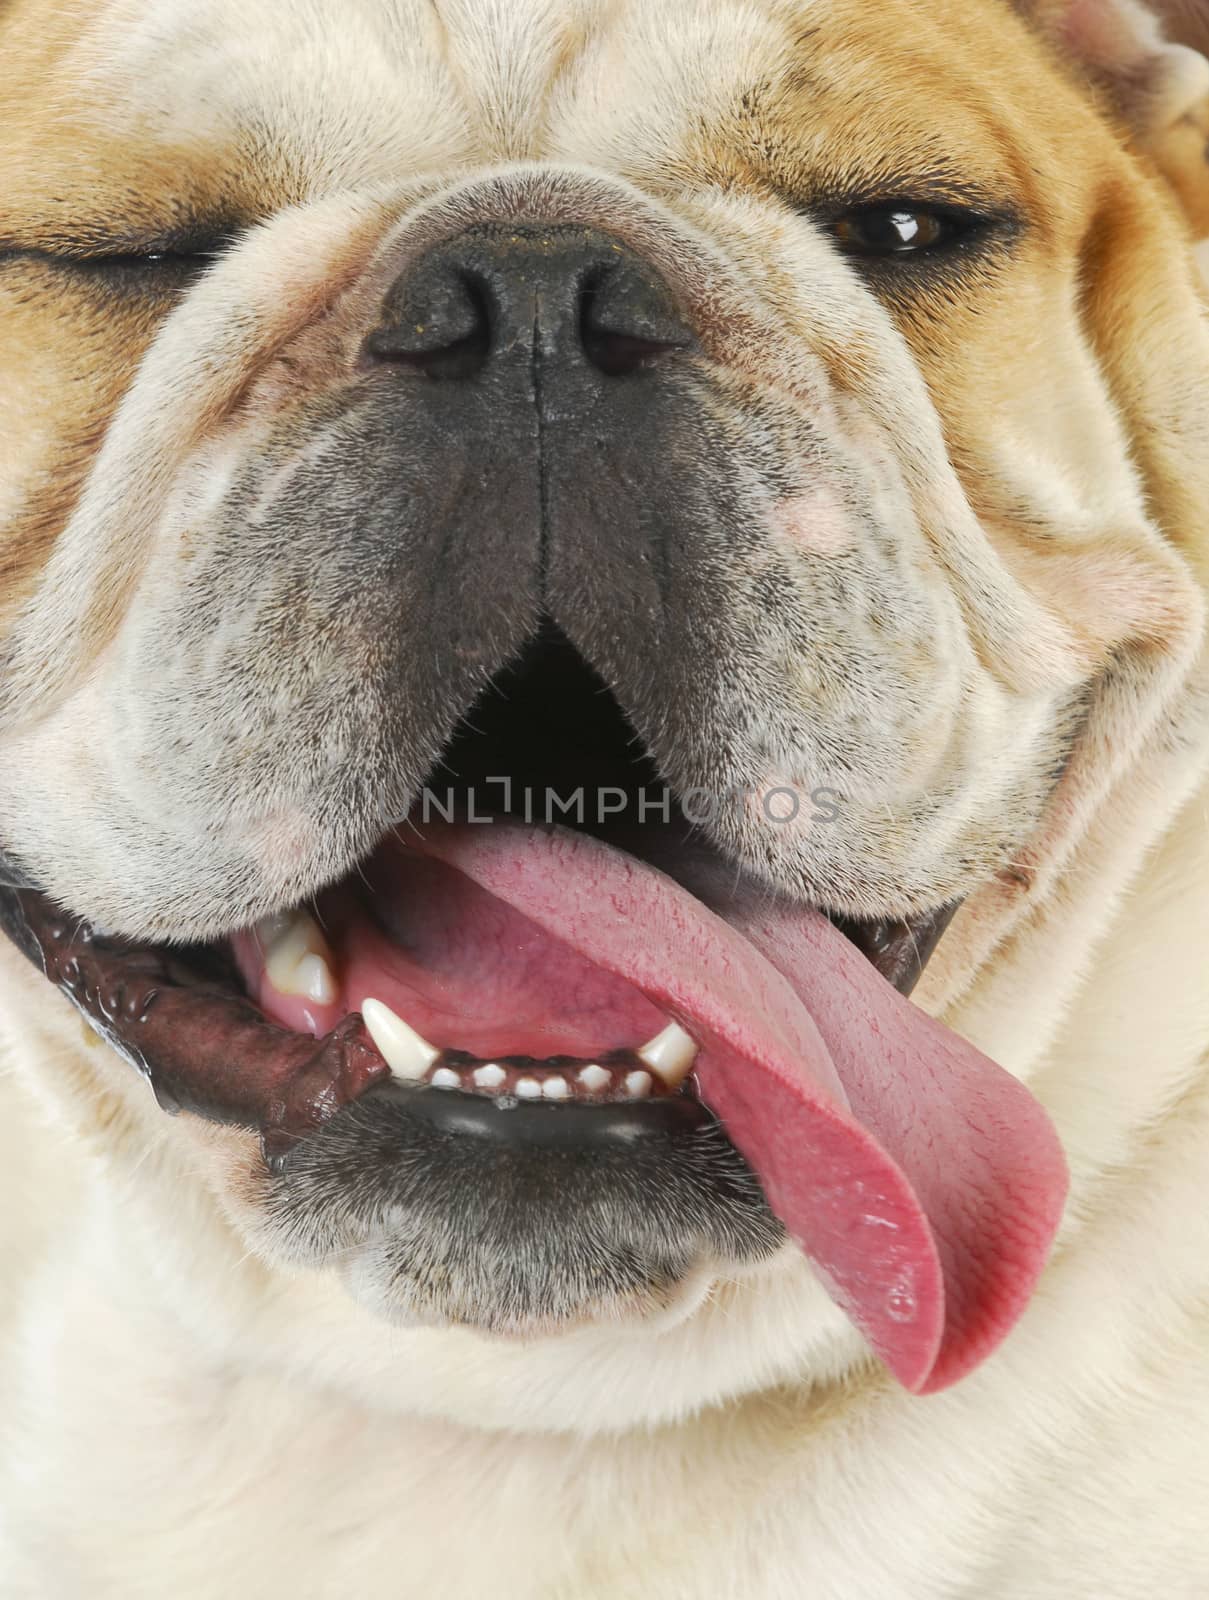 dog panting - close up of english bulldog with tongue out panting